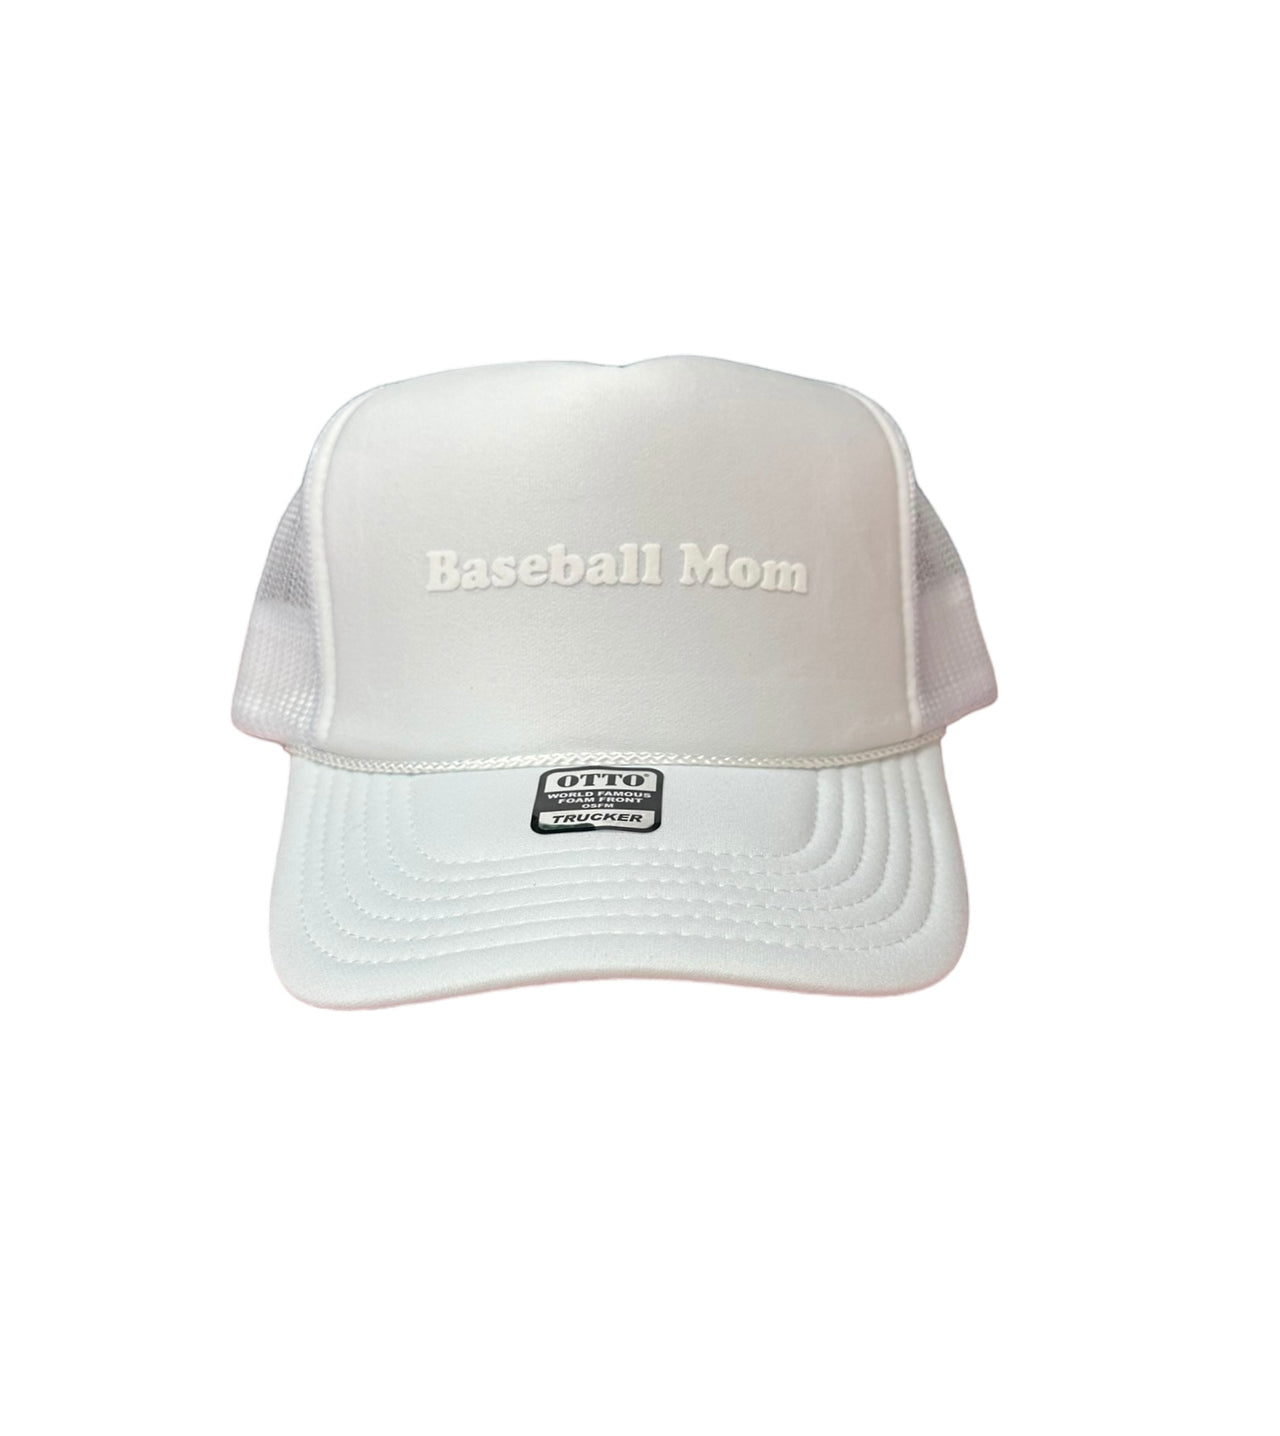 T.O.T. Trucker - Baseball Mom - (White on White)